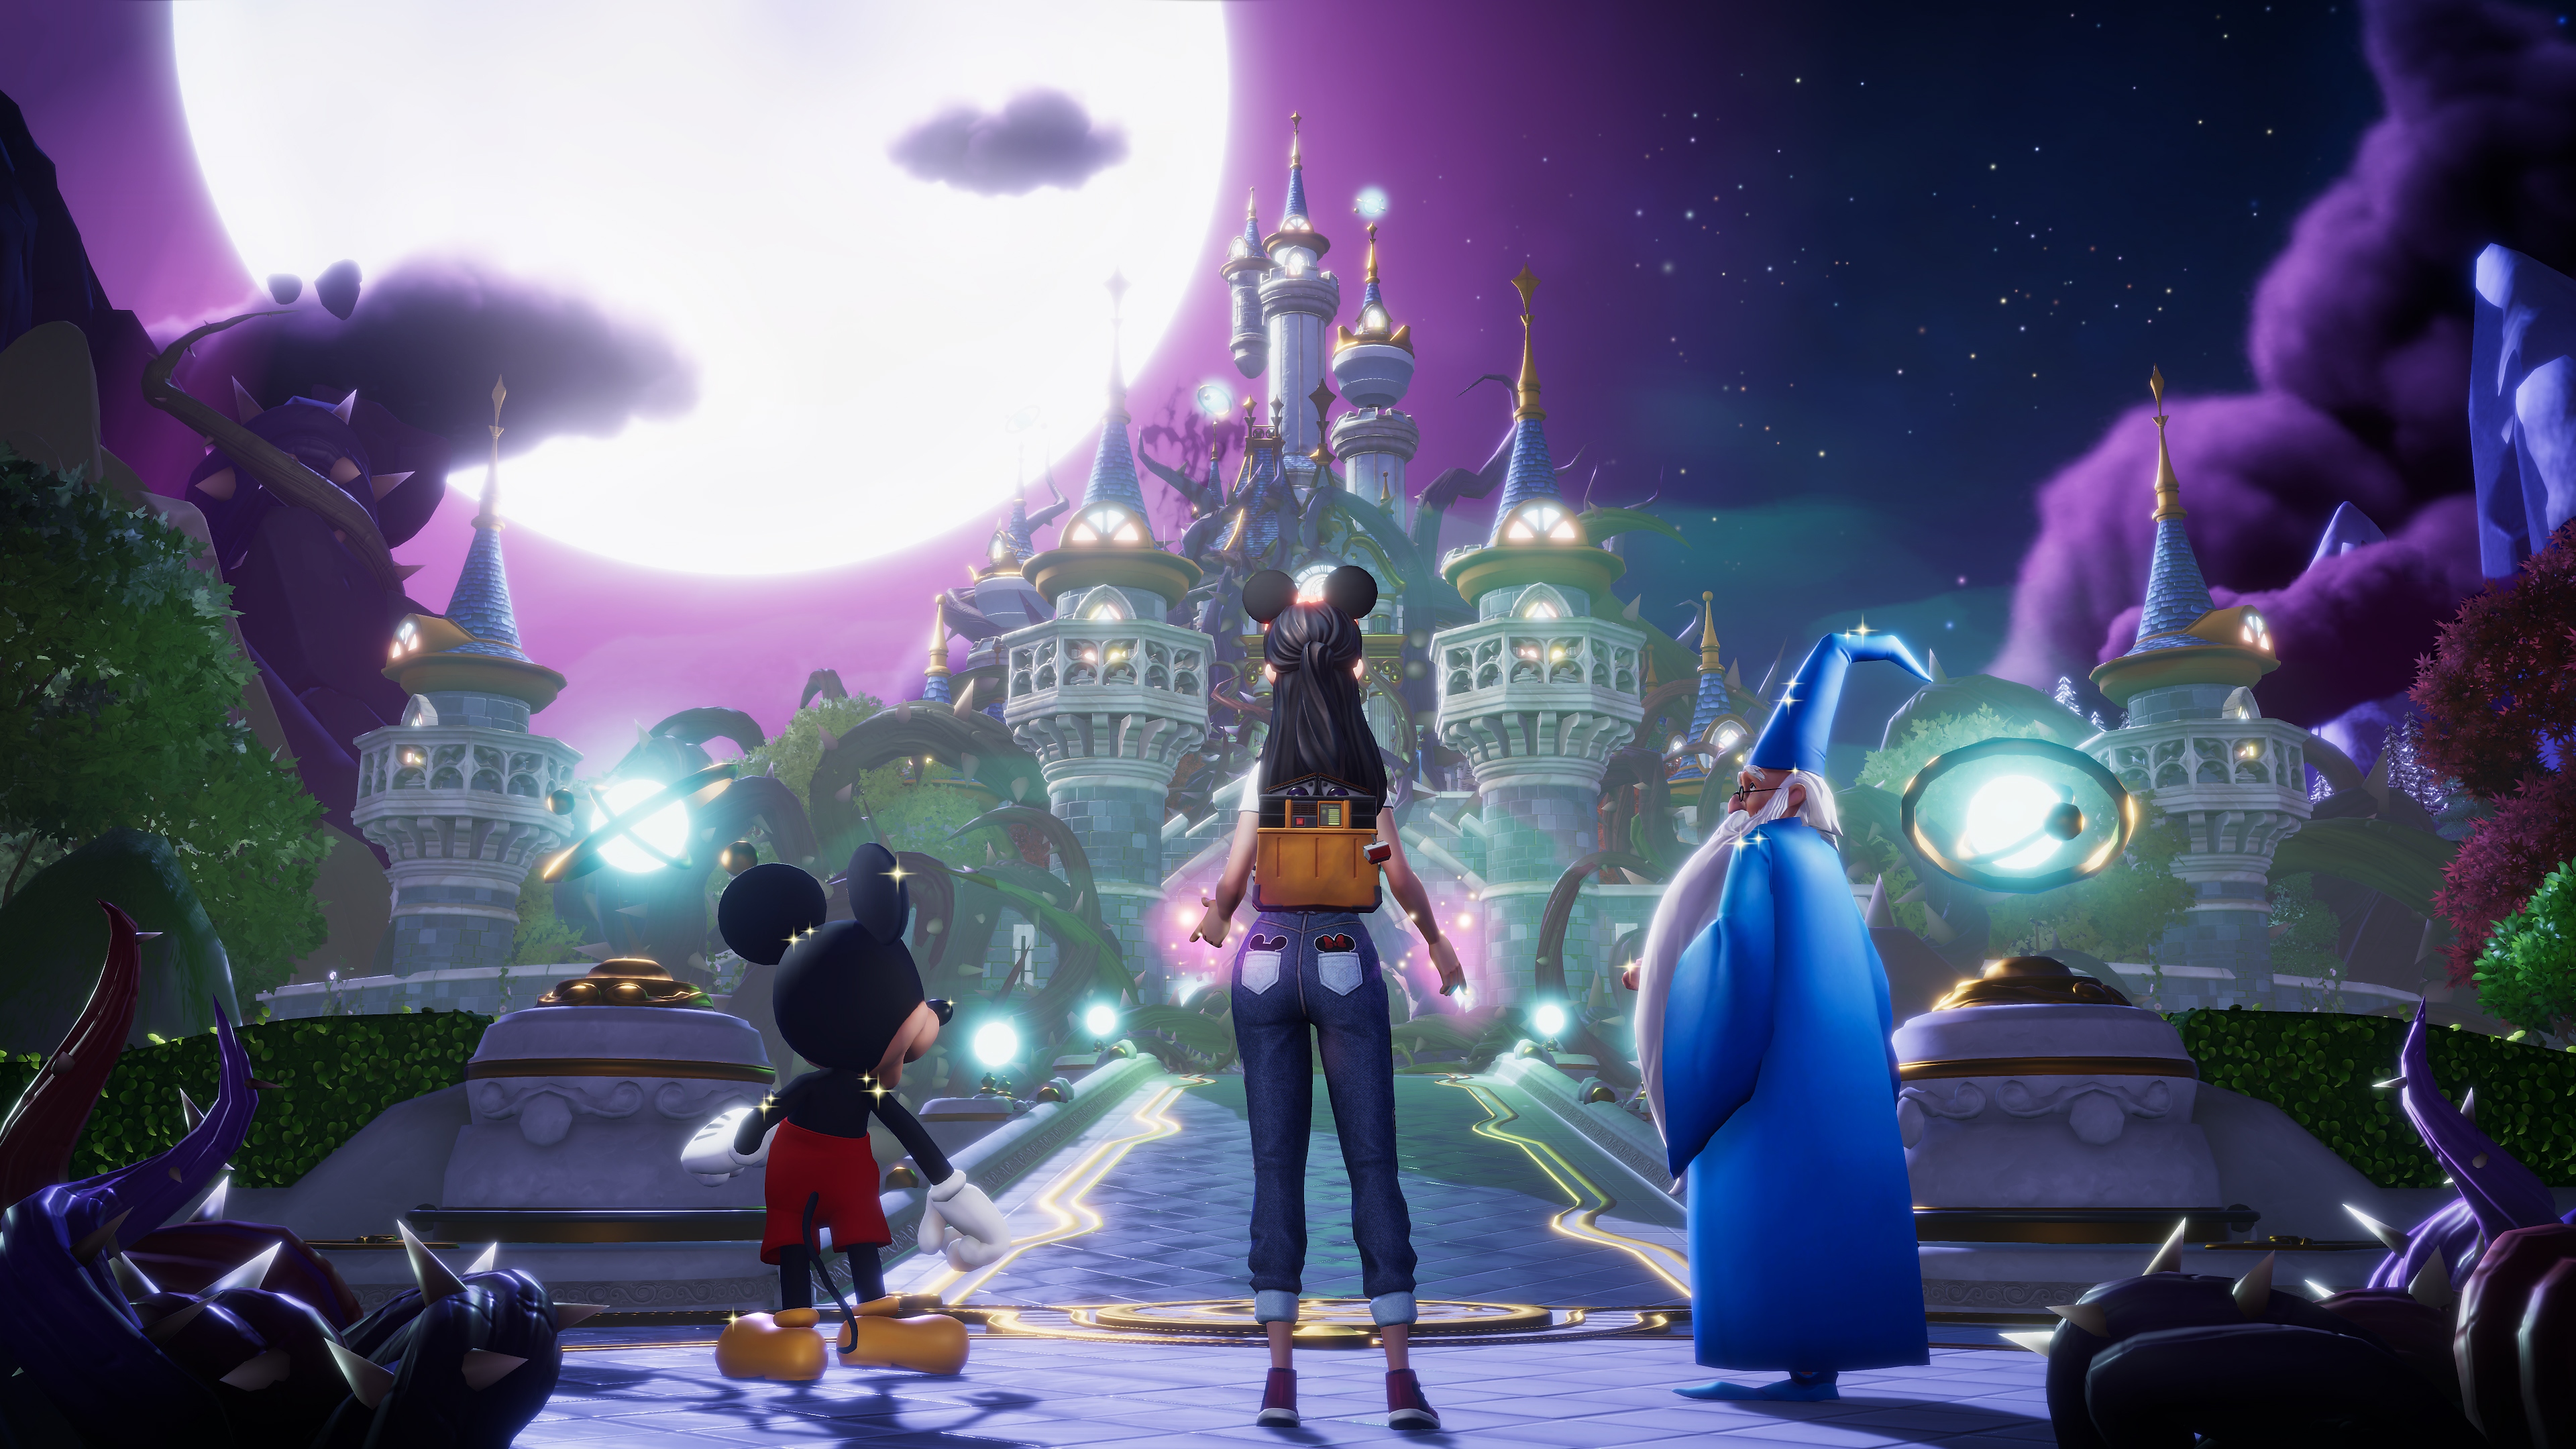 Disney Dreamlight Valley – skjermbilde av Mikke Mus, Merlin og en spilleravatar som ser mot et slott under en stor fullmåne